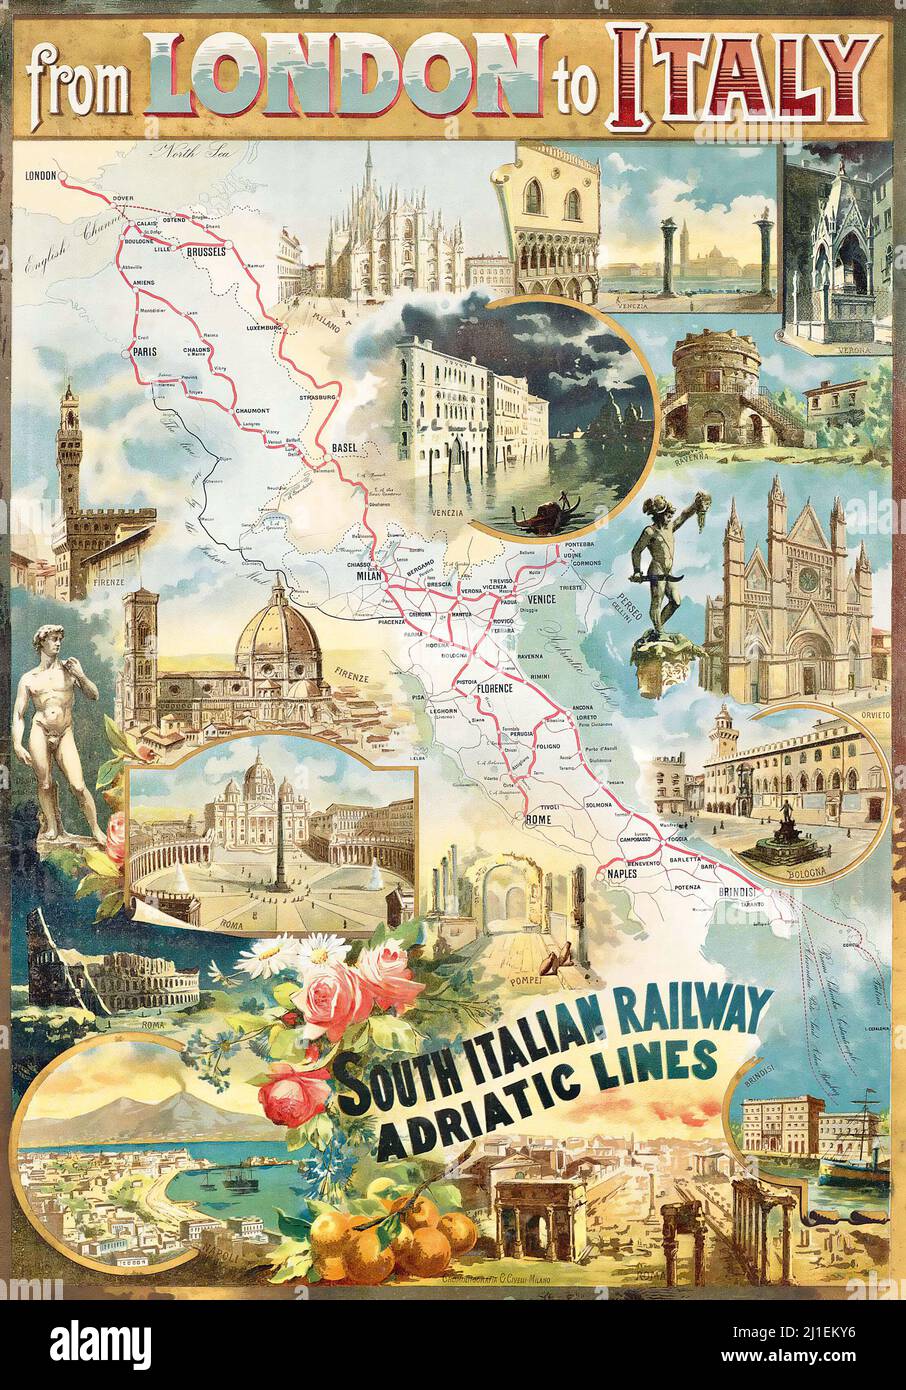 Poster di viaggio d'epoca - artista anonimo - DA LONDRA ALL'ITALIA - South Italian Railway Adriatic Lines Foto Stock